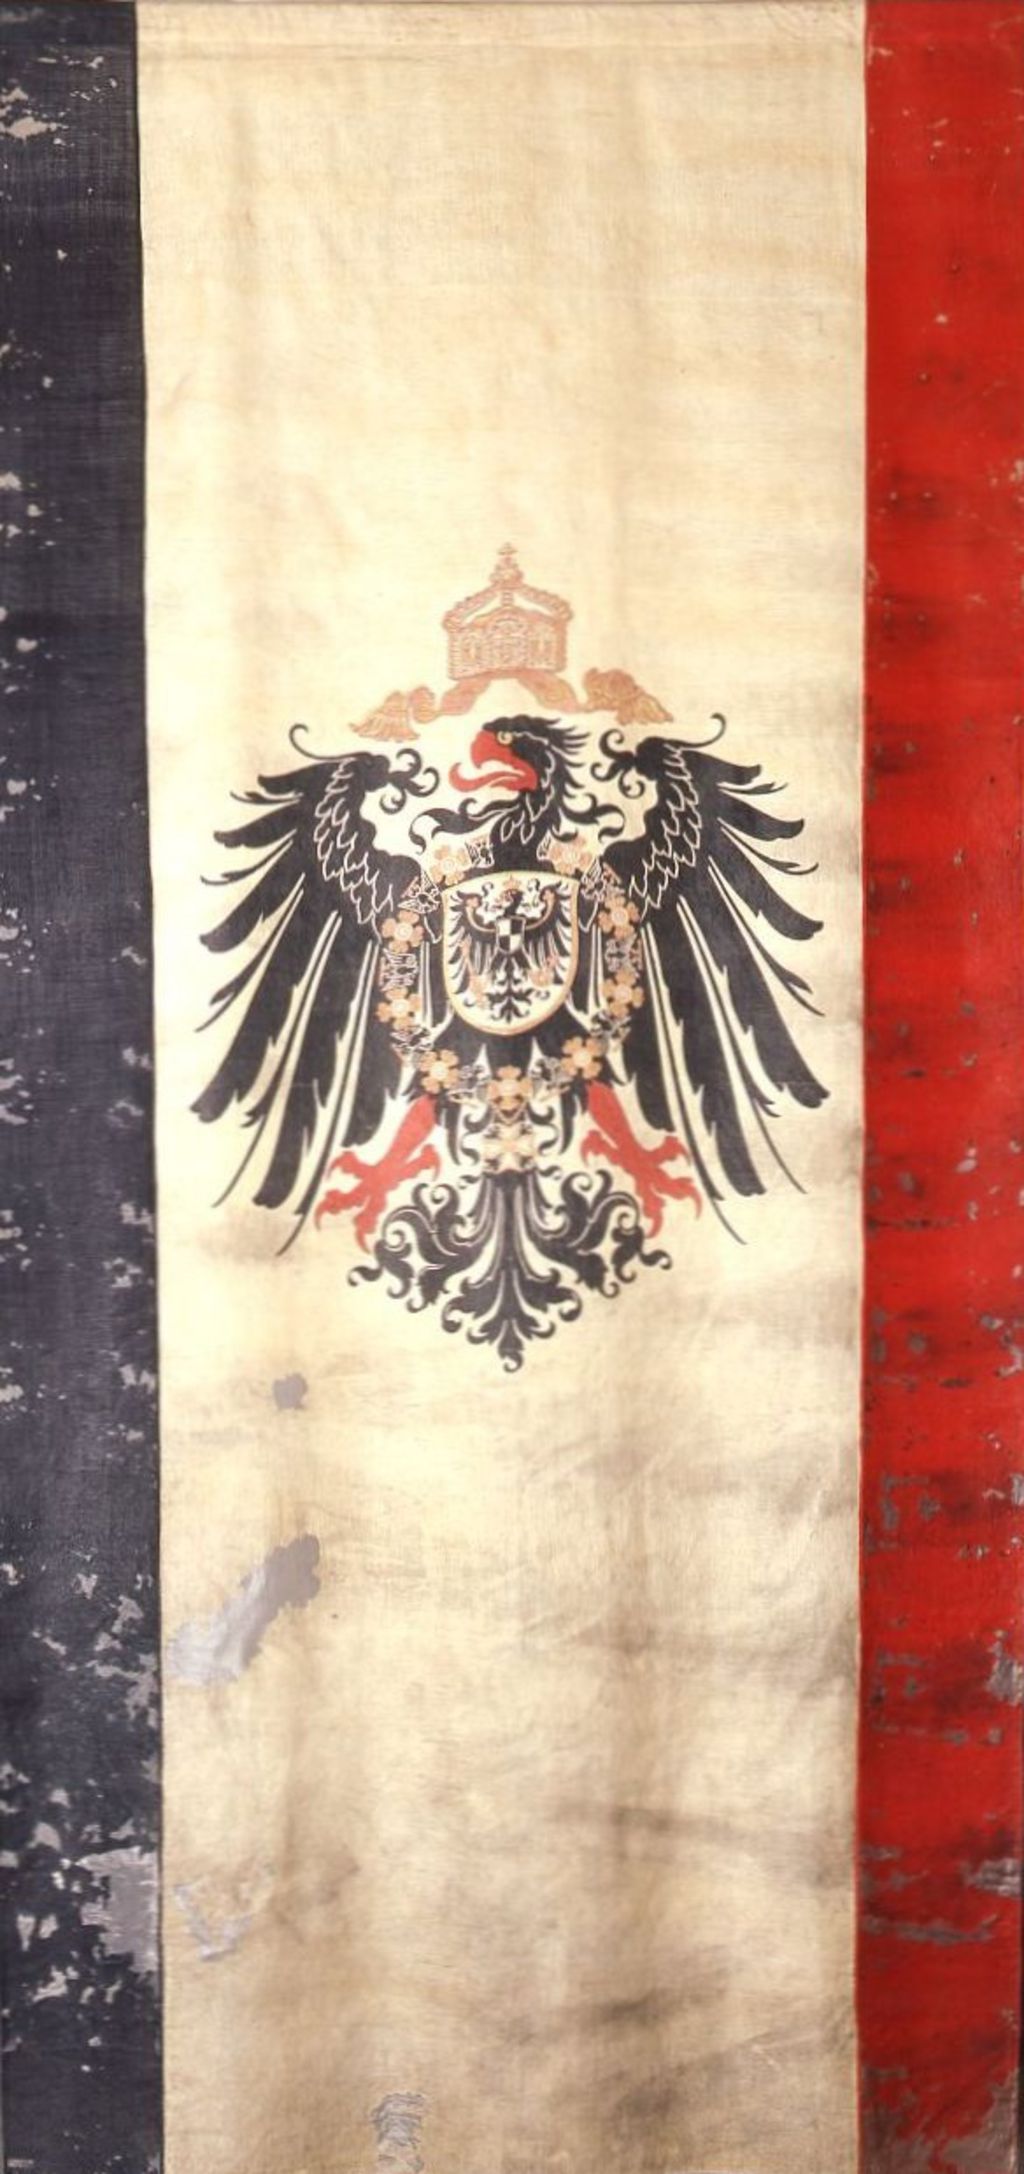 Exponat: Fahne des Deutschen Reiches, 1871-1889